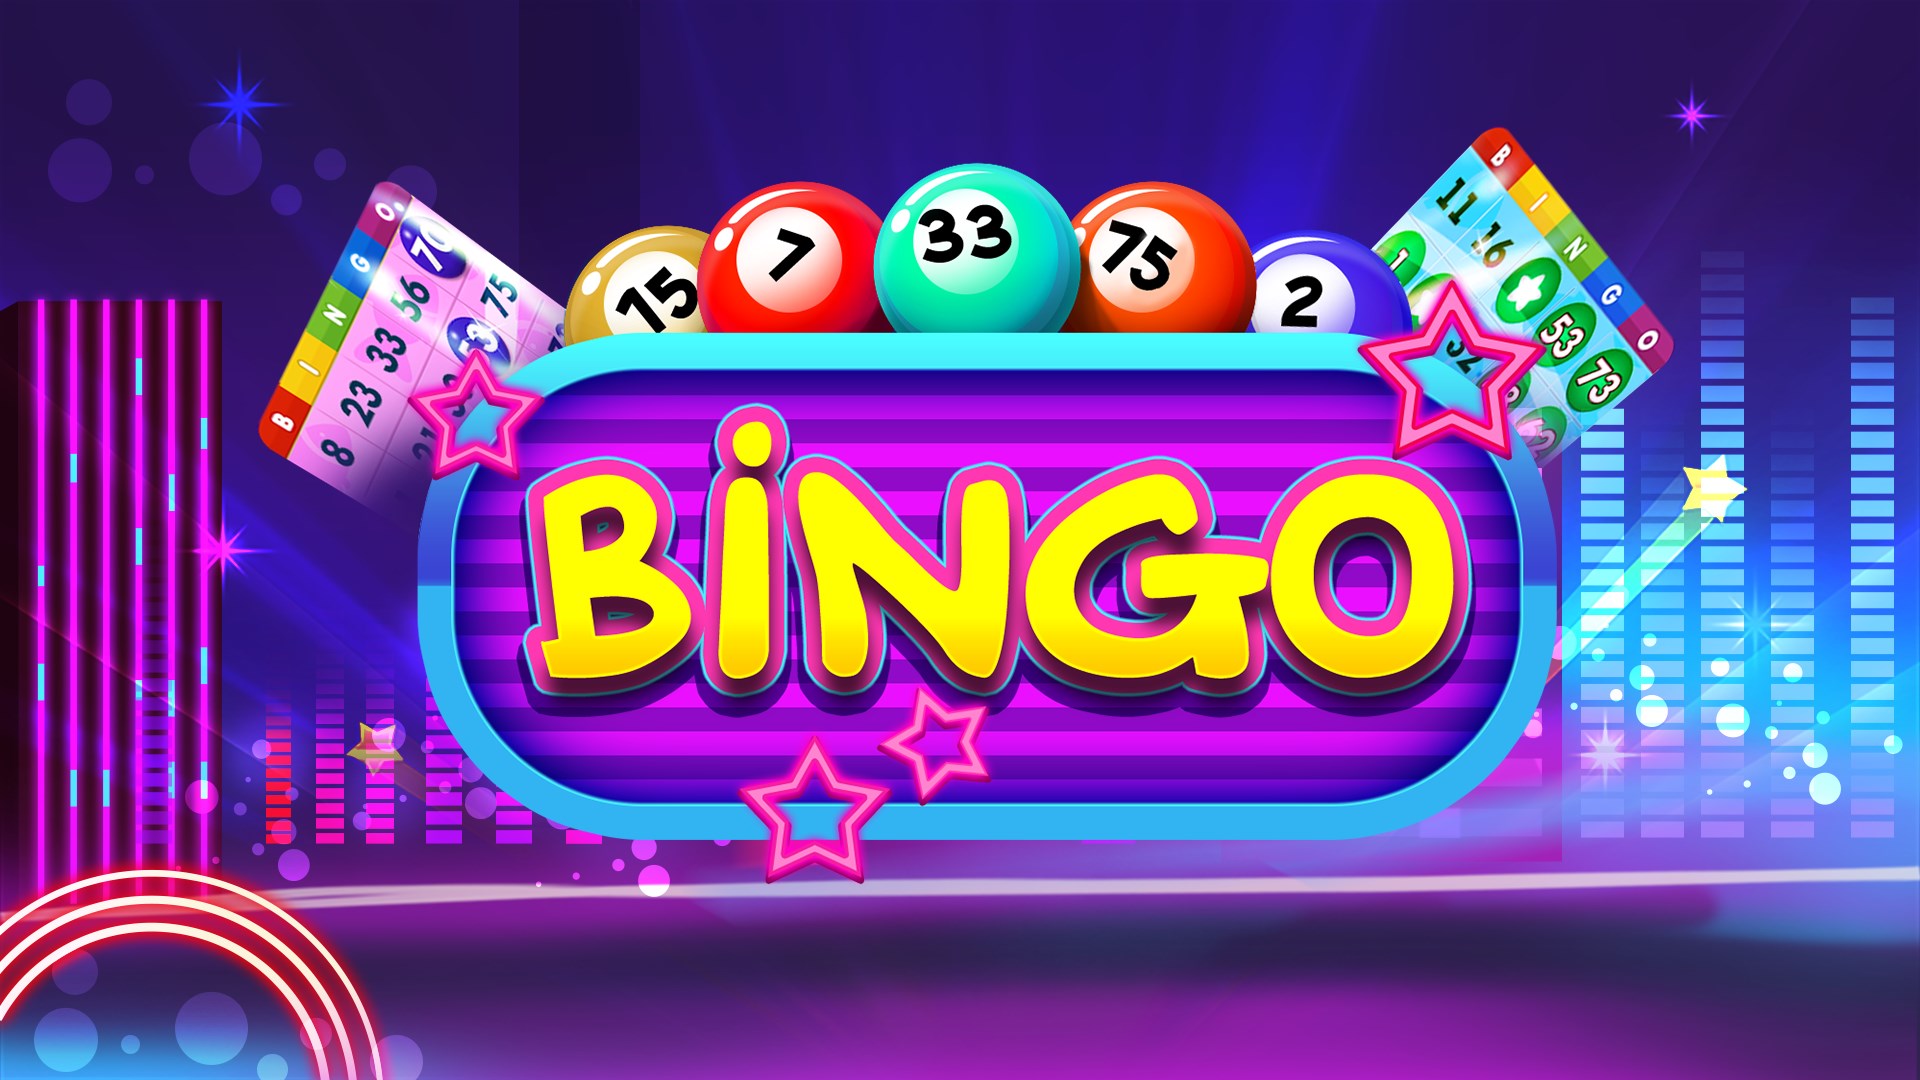 Get Bingo Casino New - Microsoft Store